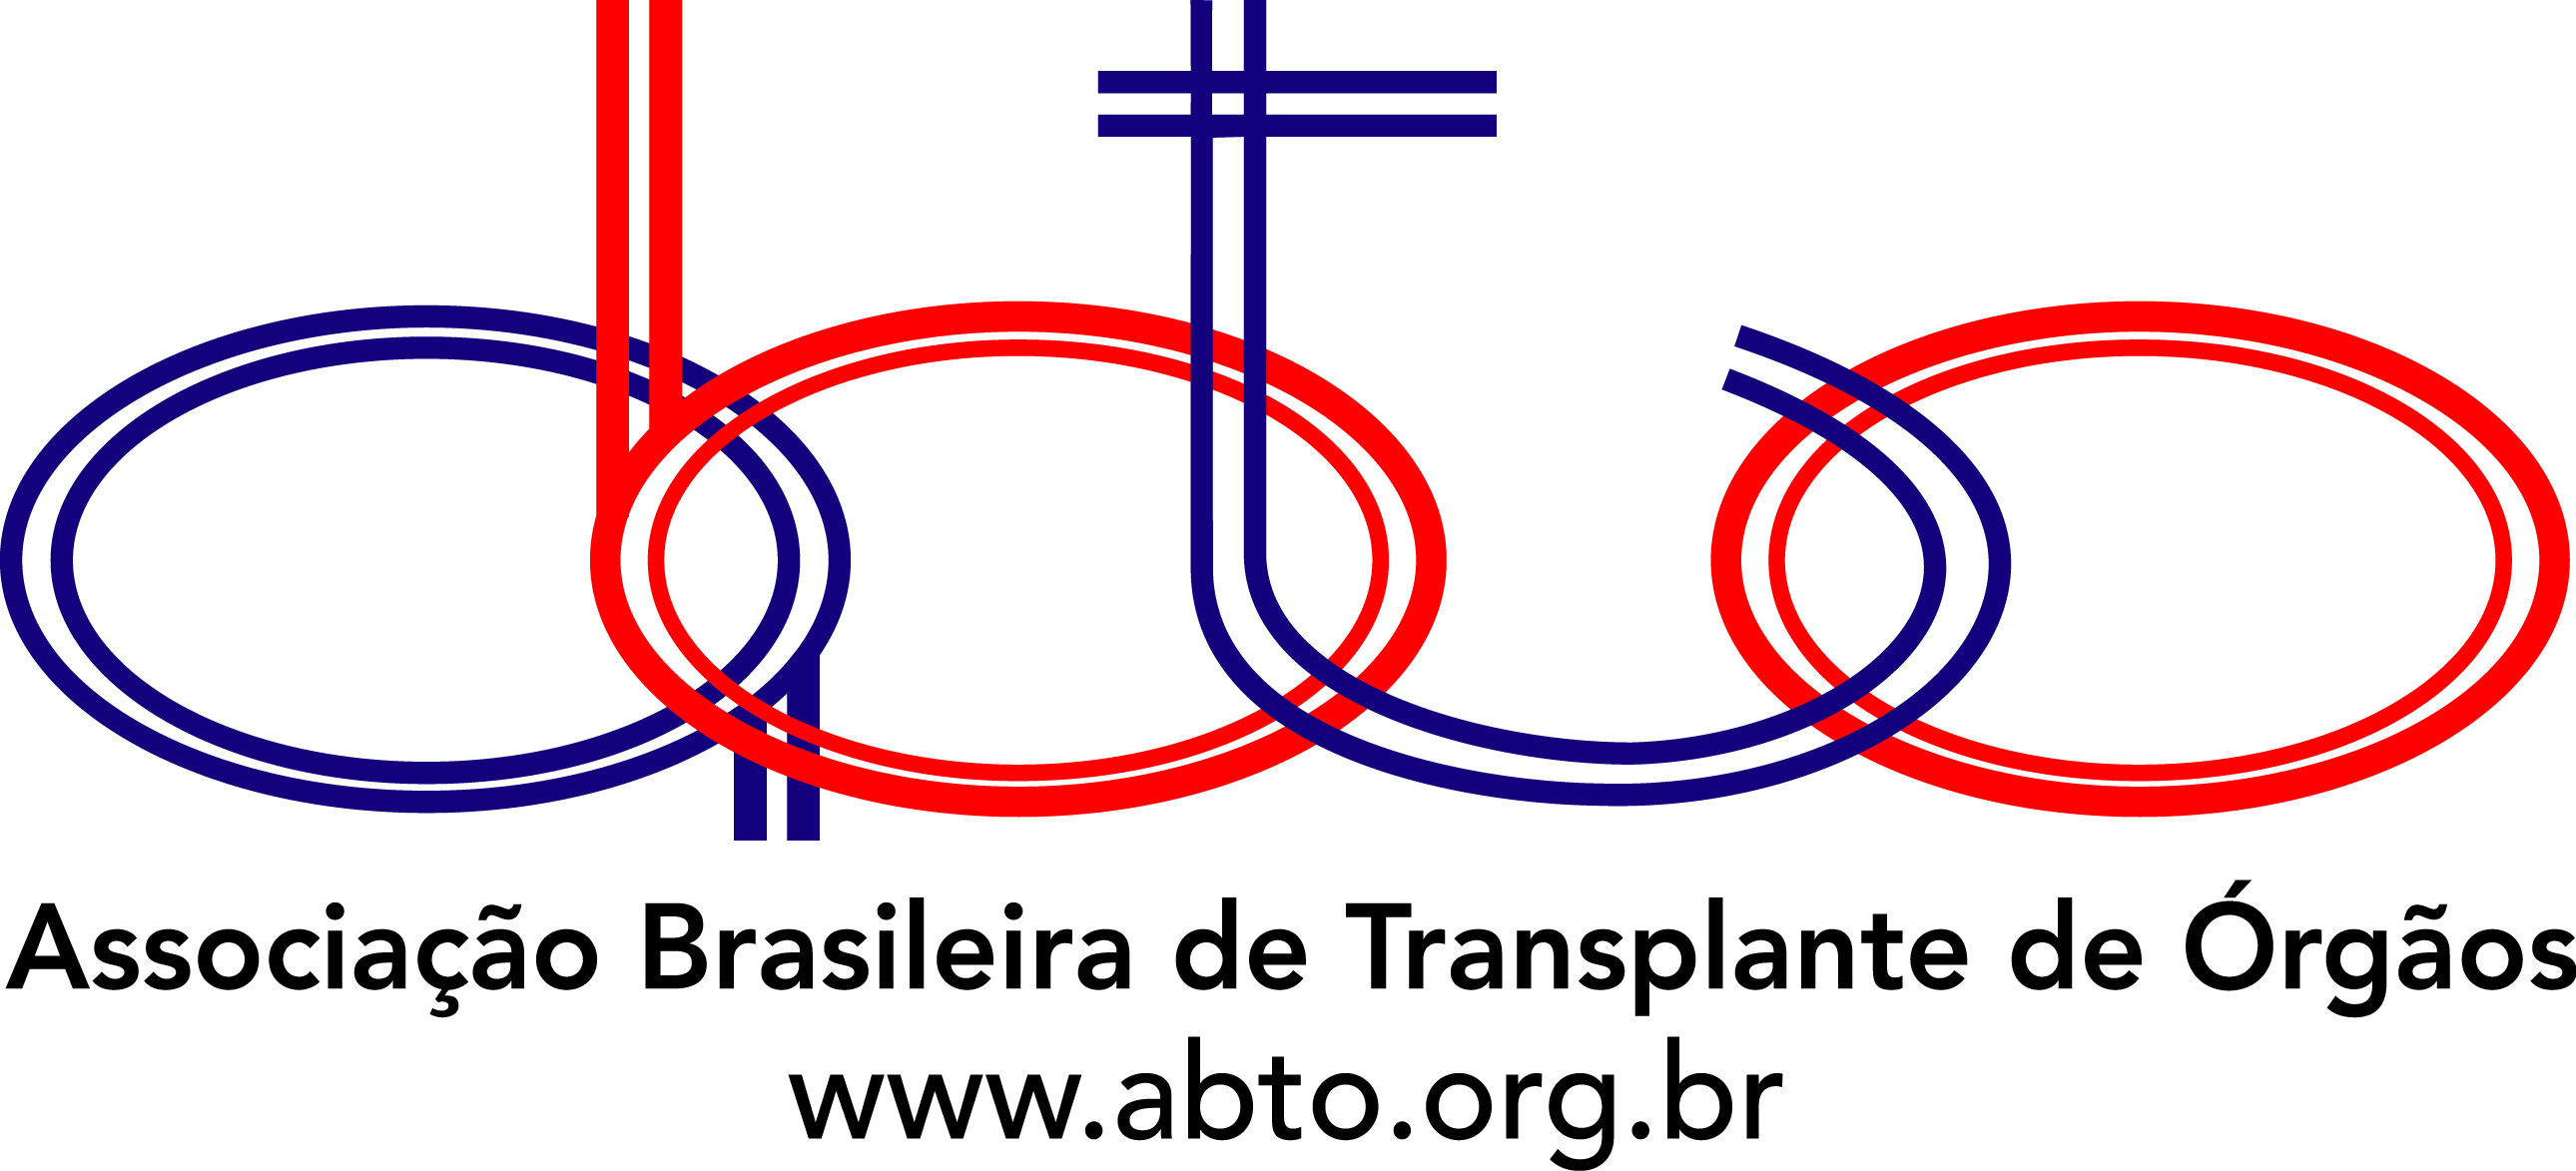 Logo Associação Brasileira de Transplante de Órgãos ABTO